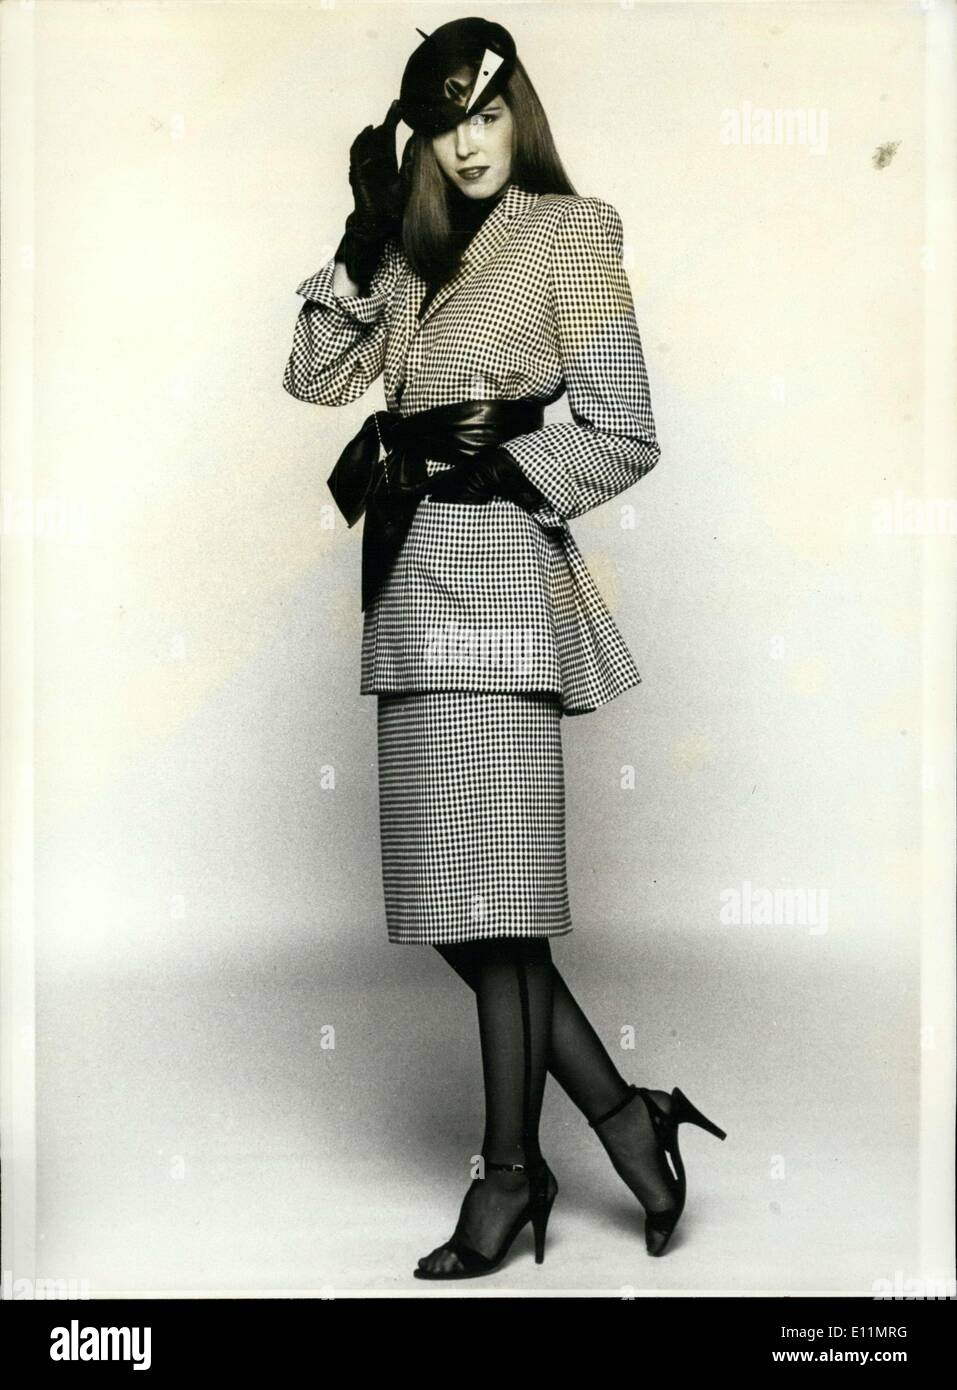 Febrero 22, 1979 - Aquí está en blanco y negro a medida hound's Tooth Blusa y falda de Christian Dior. P Foto de stock